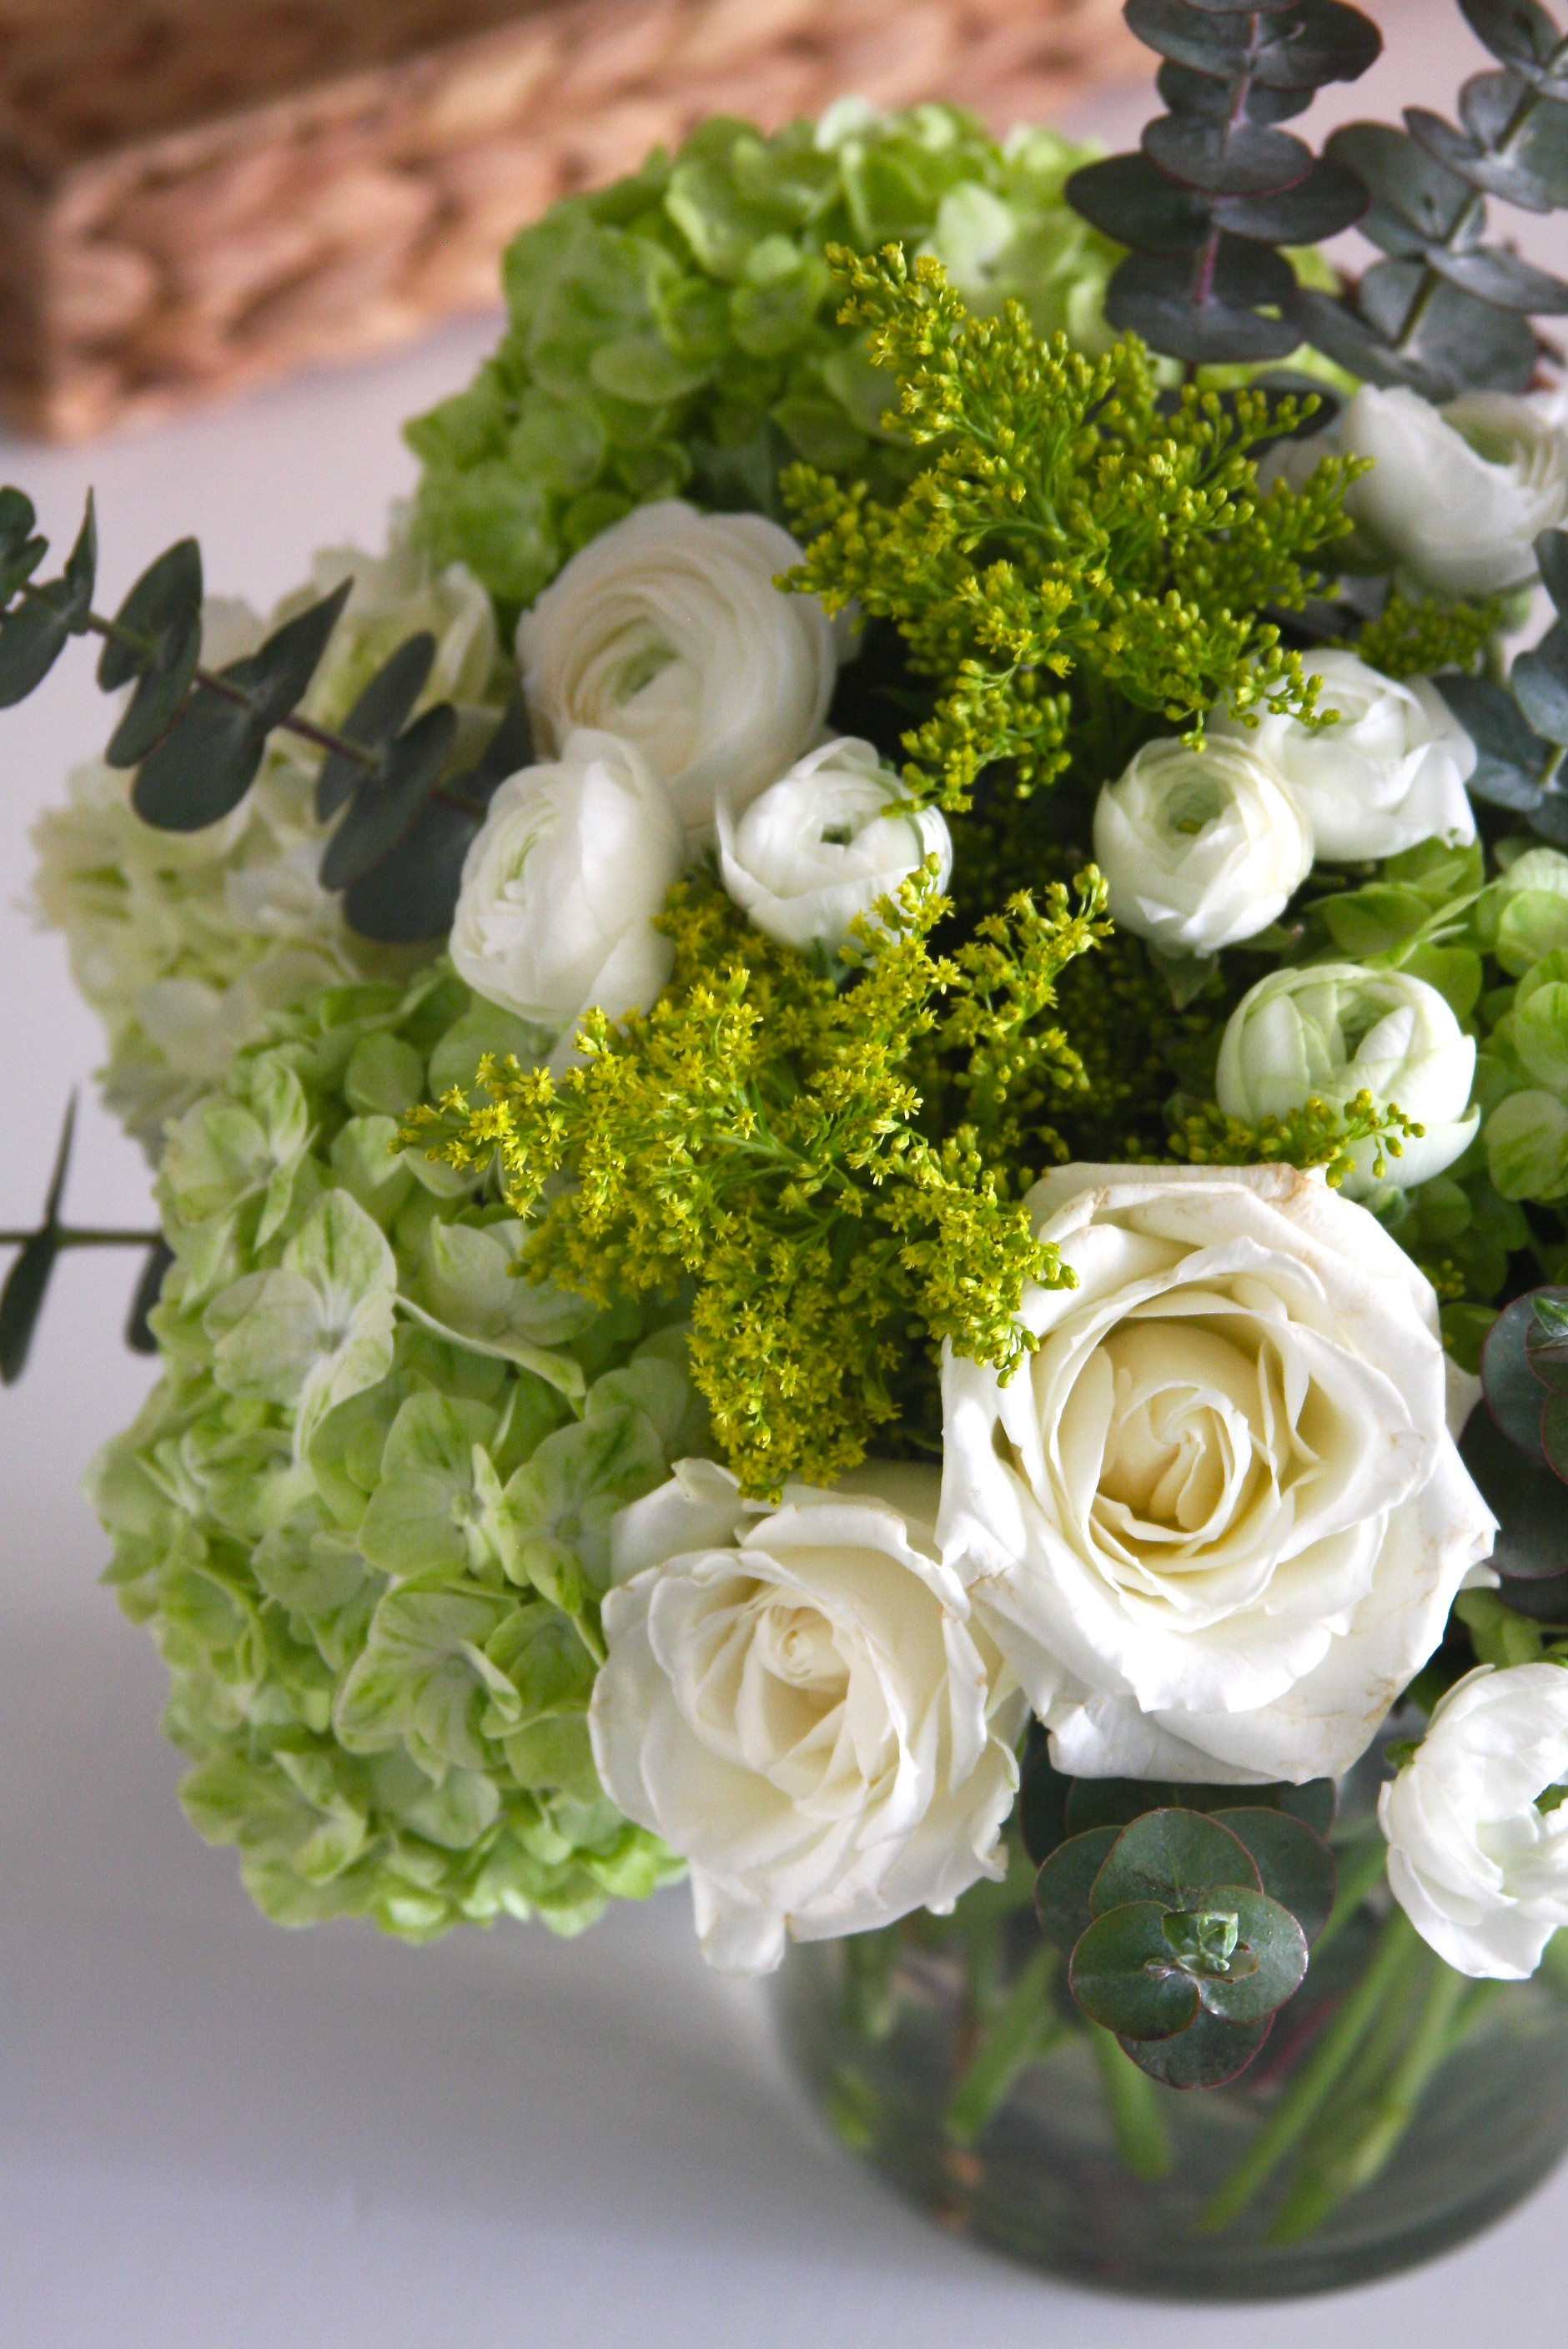 Best ideas about DIY Flower Arrangements
. Save or Pin Elegant DIY Flower Arrangement Now.